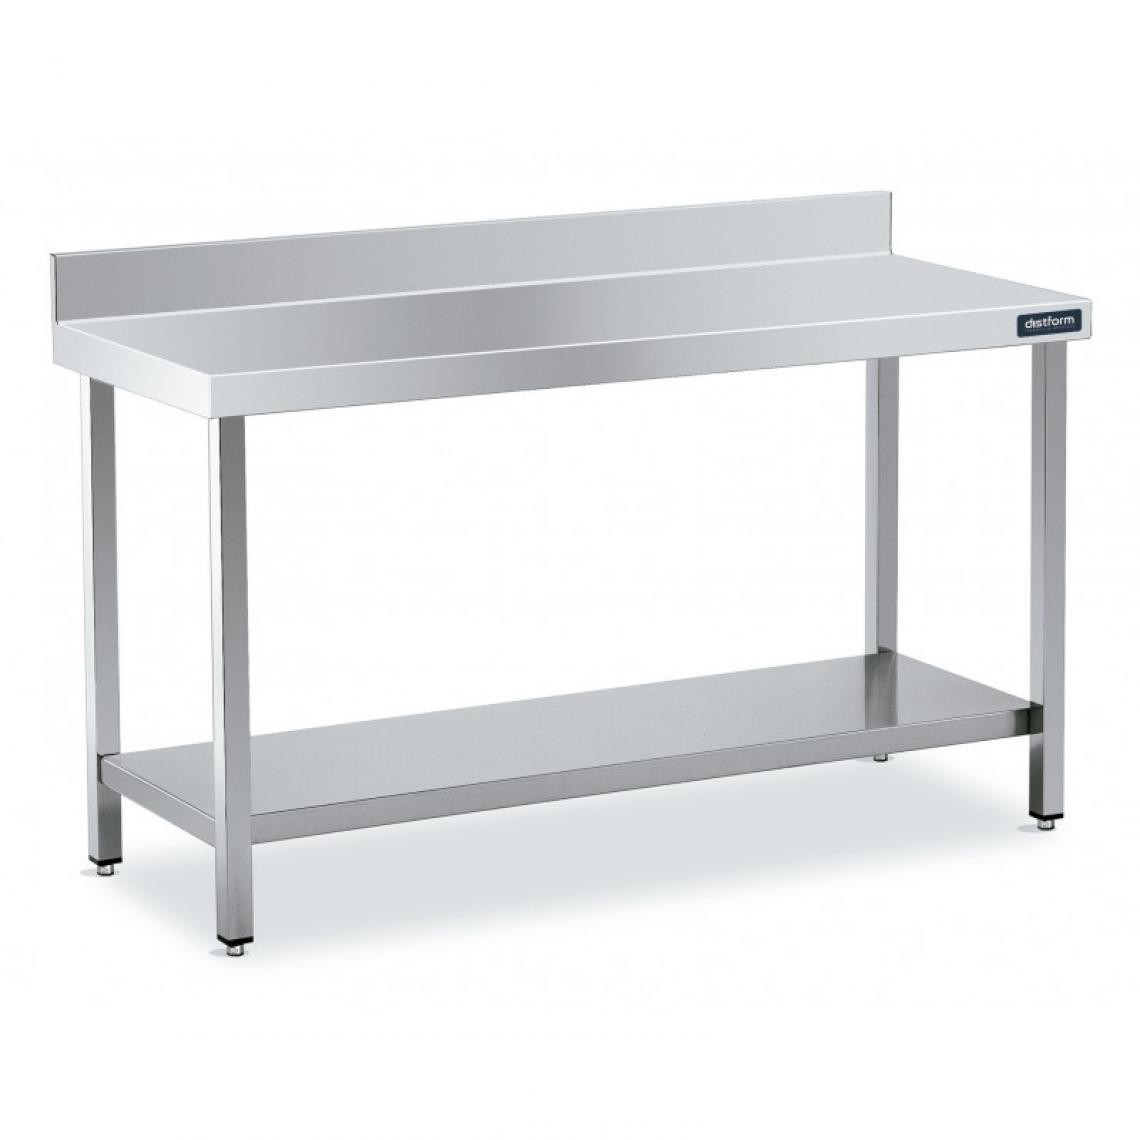 DISTFORM - Table Inox de Travail Adossée avec Étagère - Gamme 500 - Distform - Acier inoxydable1800x500 - Tables à manger